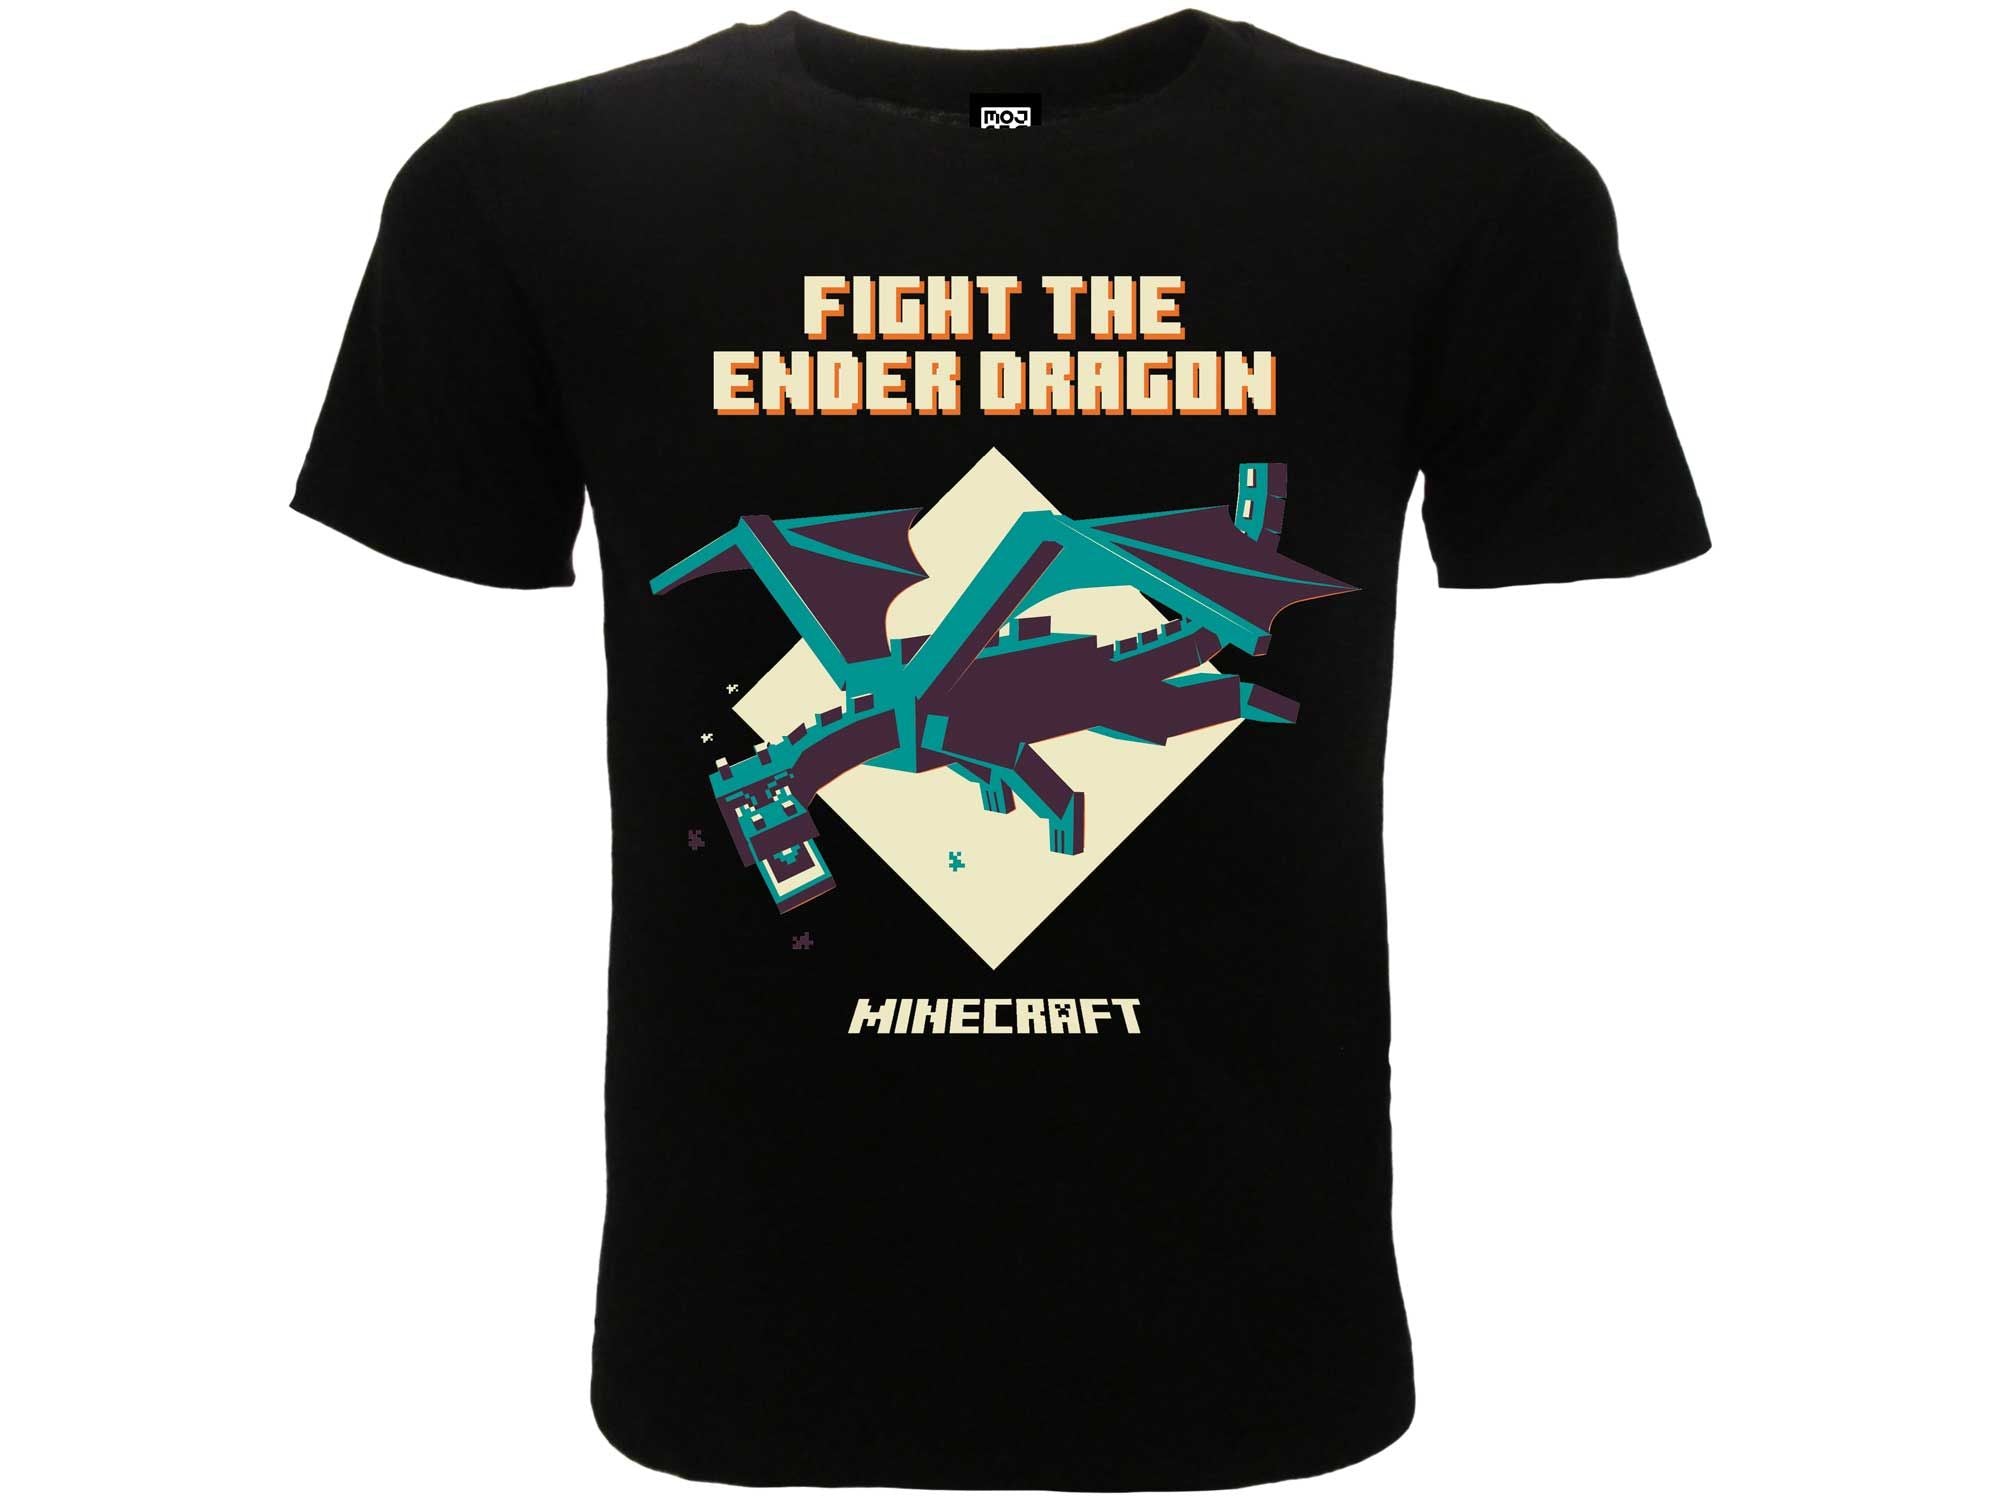 MINECRAFT - "Fight the ender dragon" T-shirt 9/11 anni nera - Disponibile in 2/3 giorni lavorativi GED